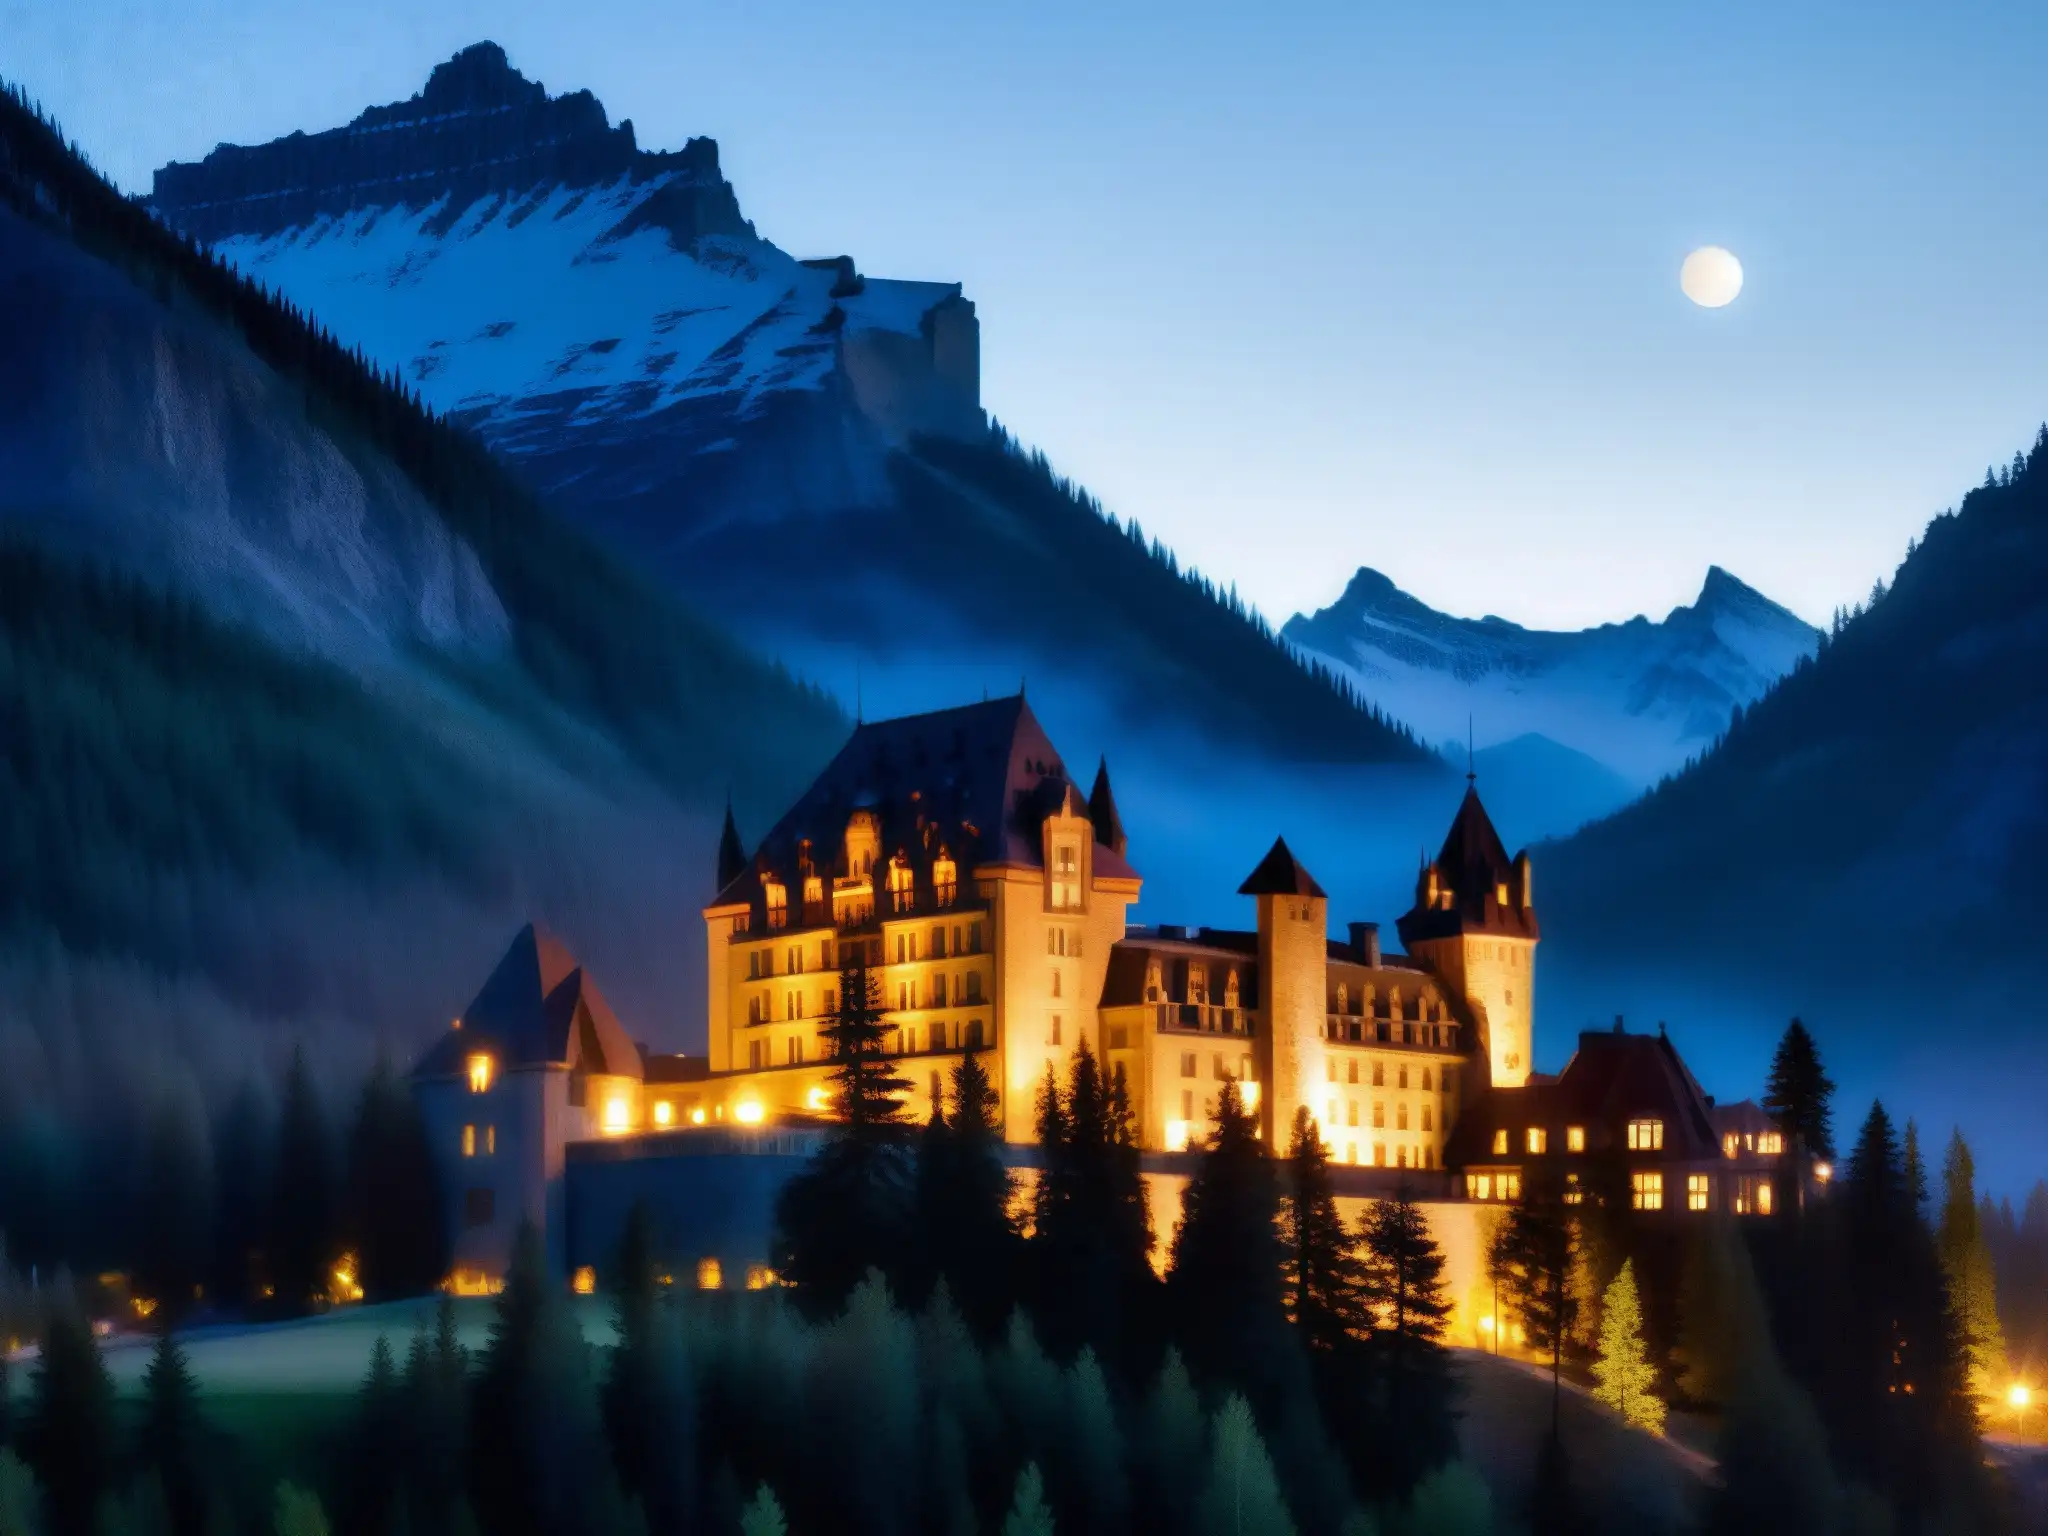 Vista encantada del Fairmont Banff Springs Hotel en la neblina de la noche, evocando la leyenda urbana del hotel encantado en las Rocosas Canadienses